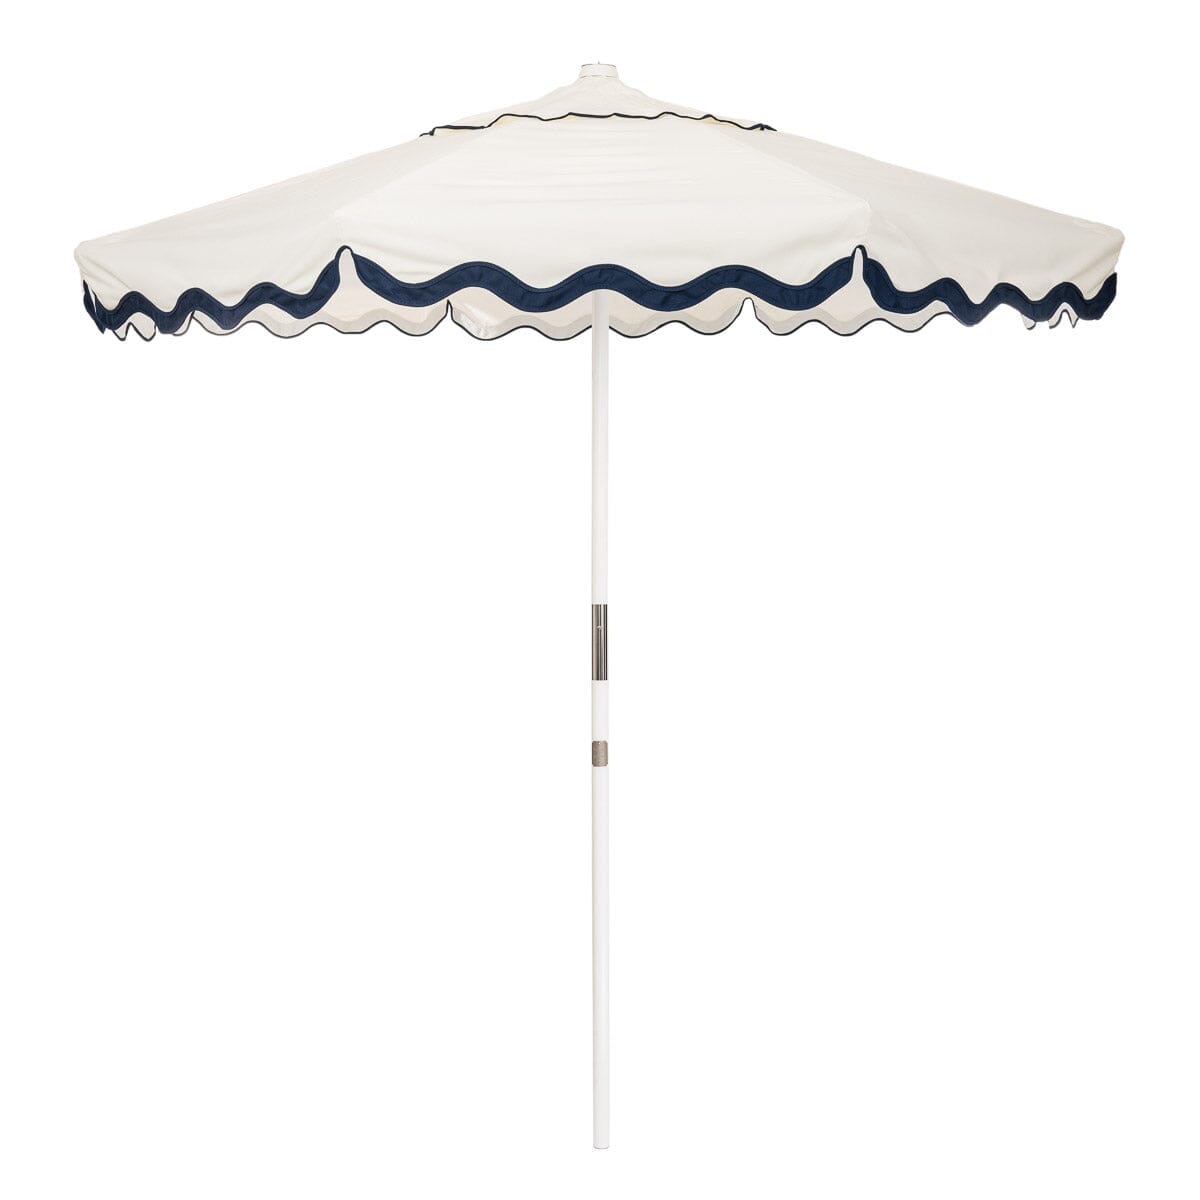 The Market Umbrella - Rivie White Market Umbrella Business & Pleasure Co 